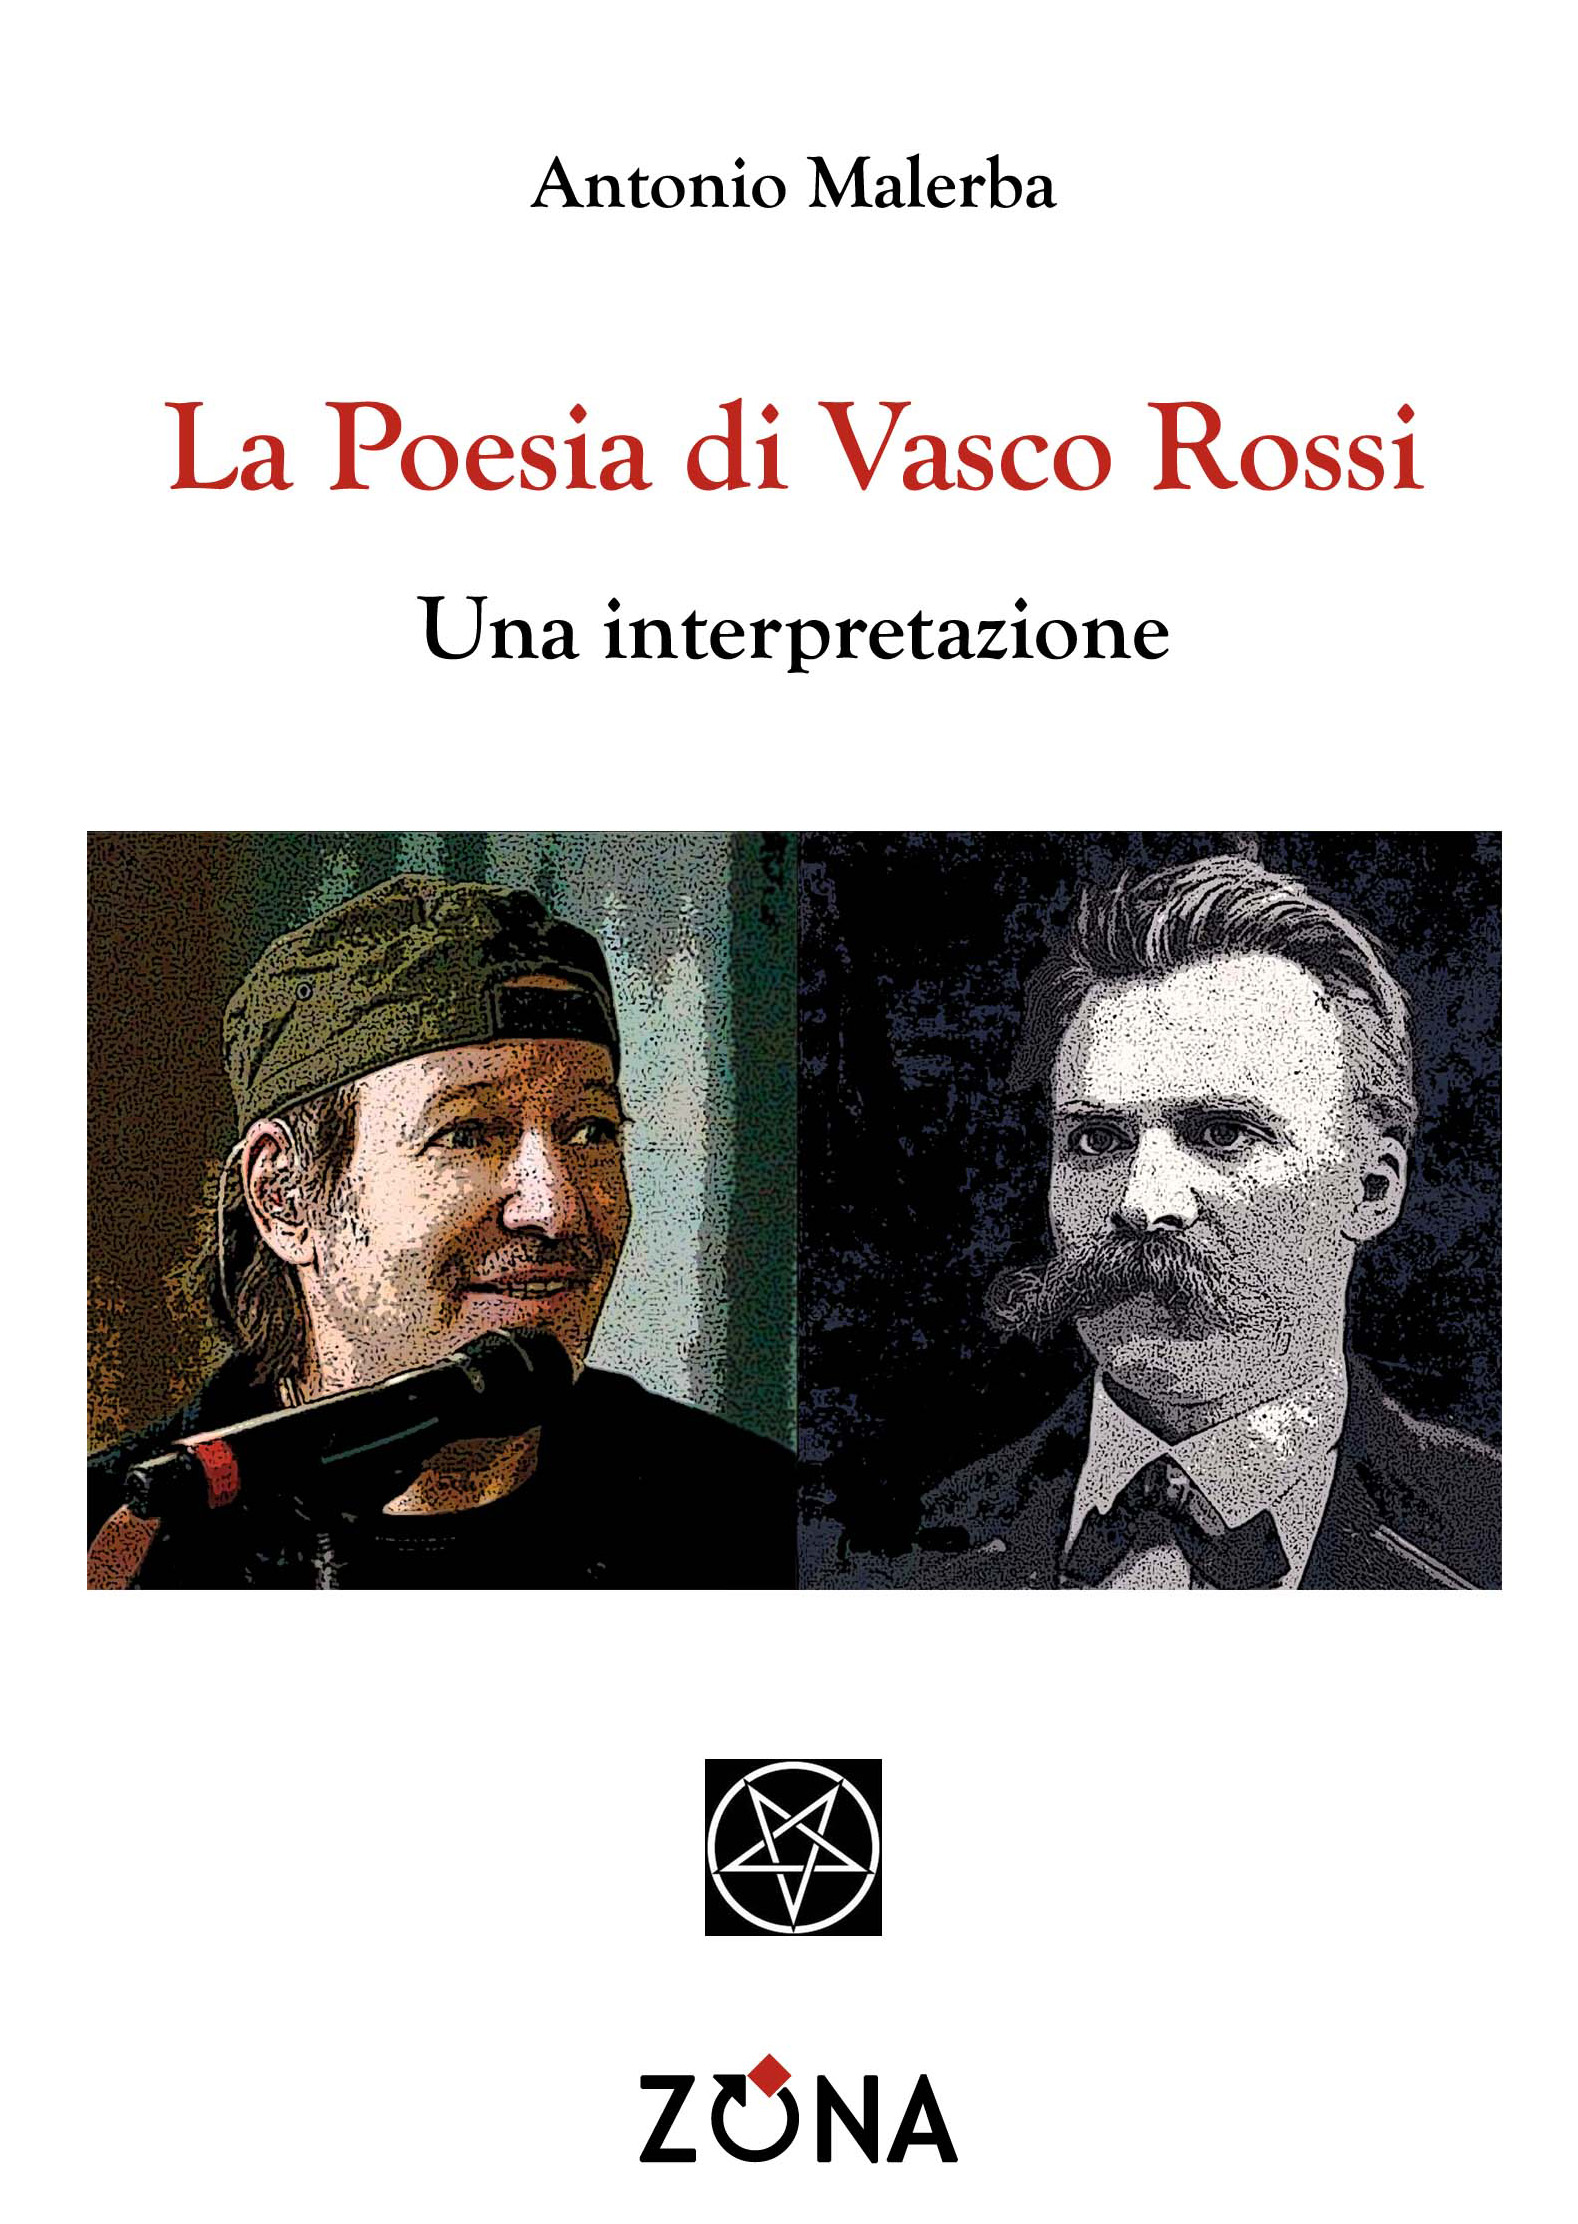 More about La poesia di Vasco Rossi